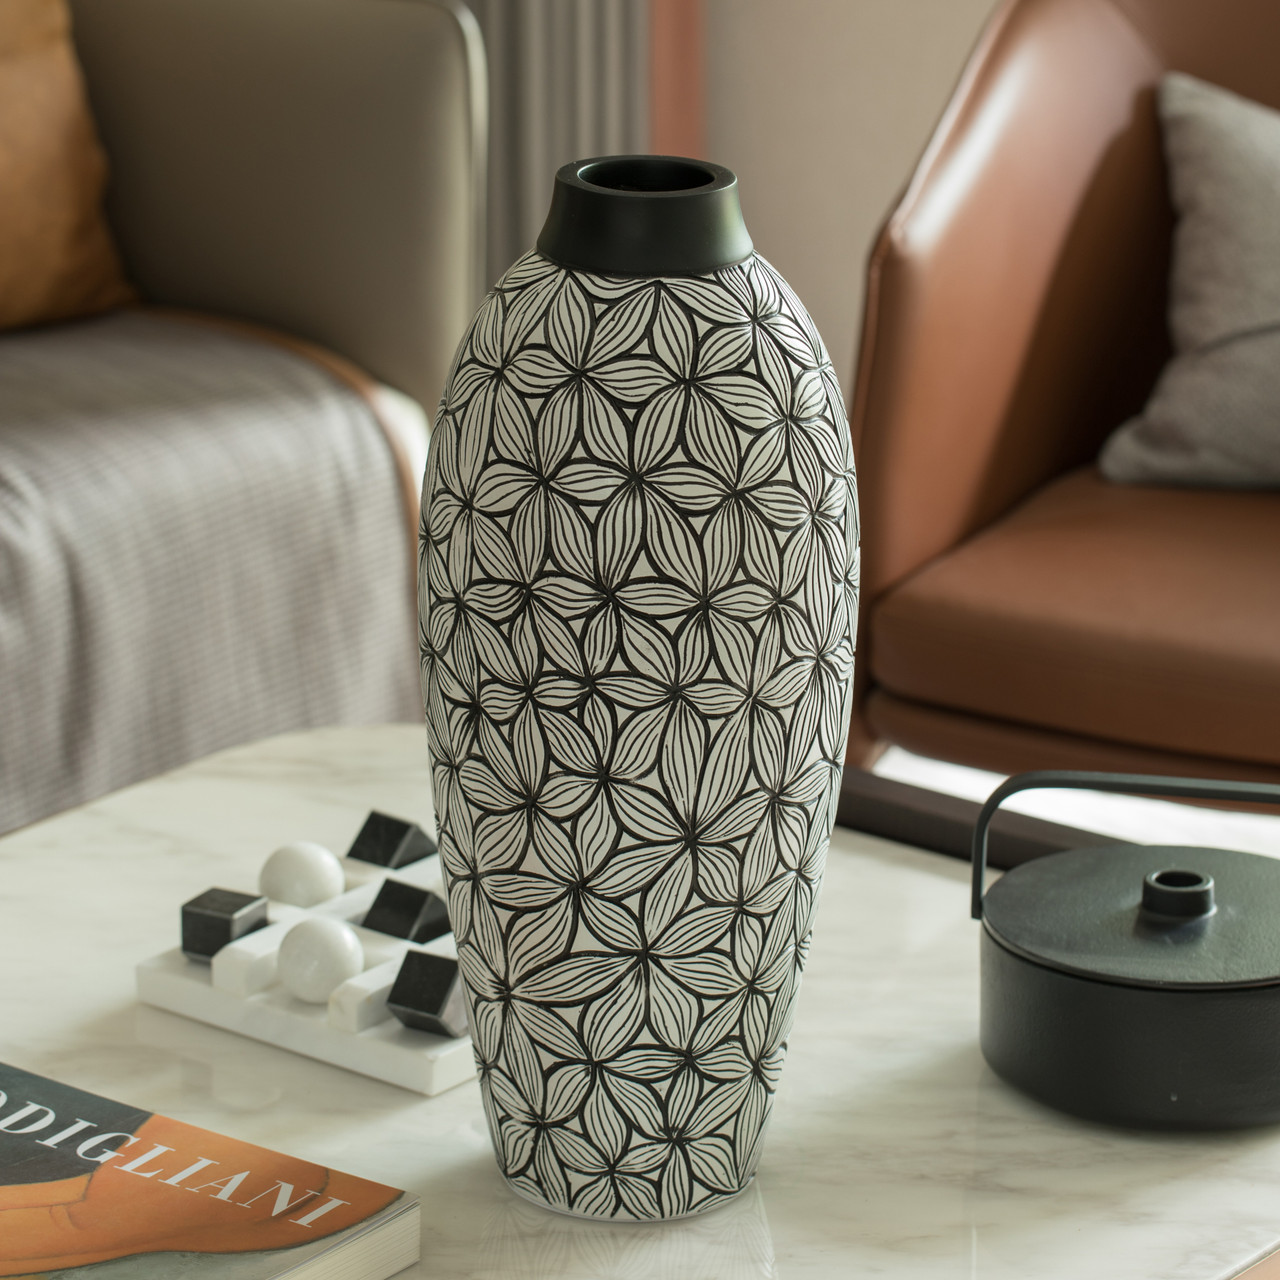 Vase Ceramic Light Luxury Home Decor Modern Living Room Dining Table ZHAOSHUNLI Size : S